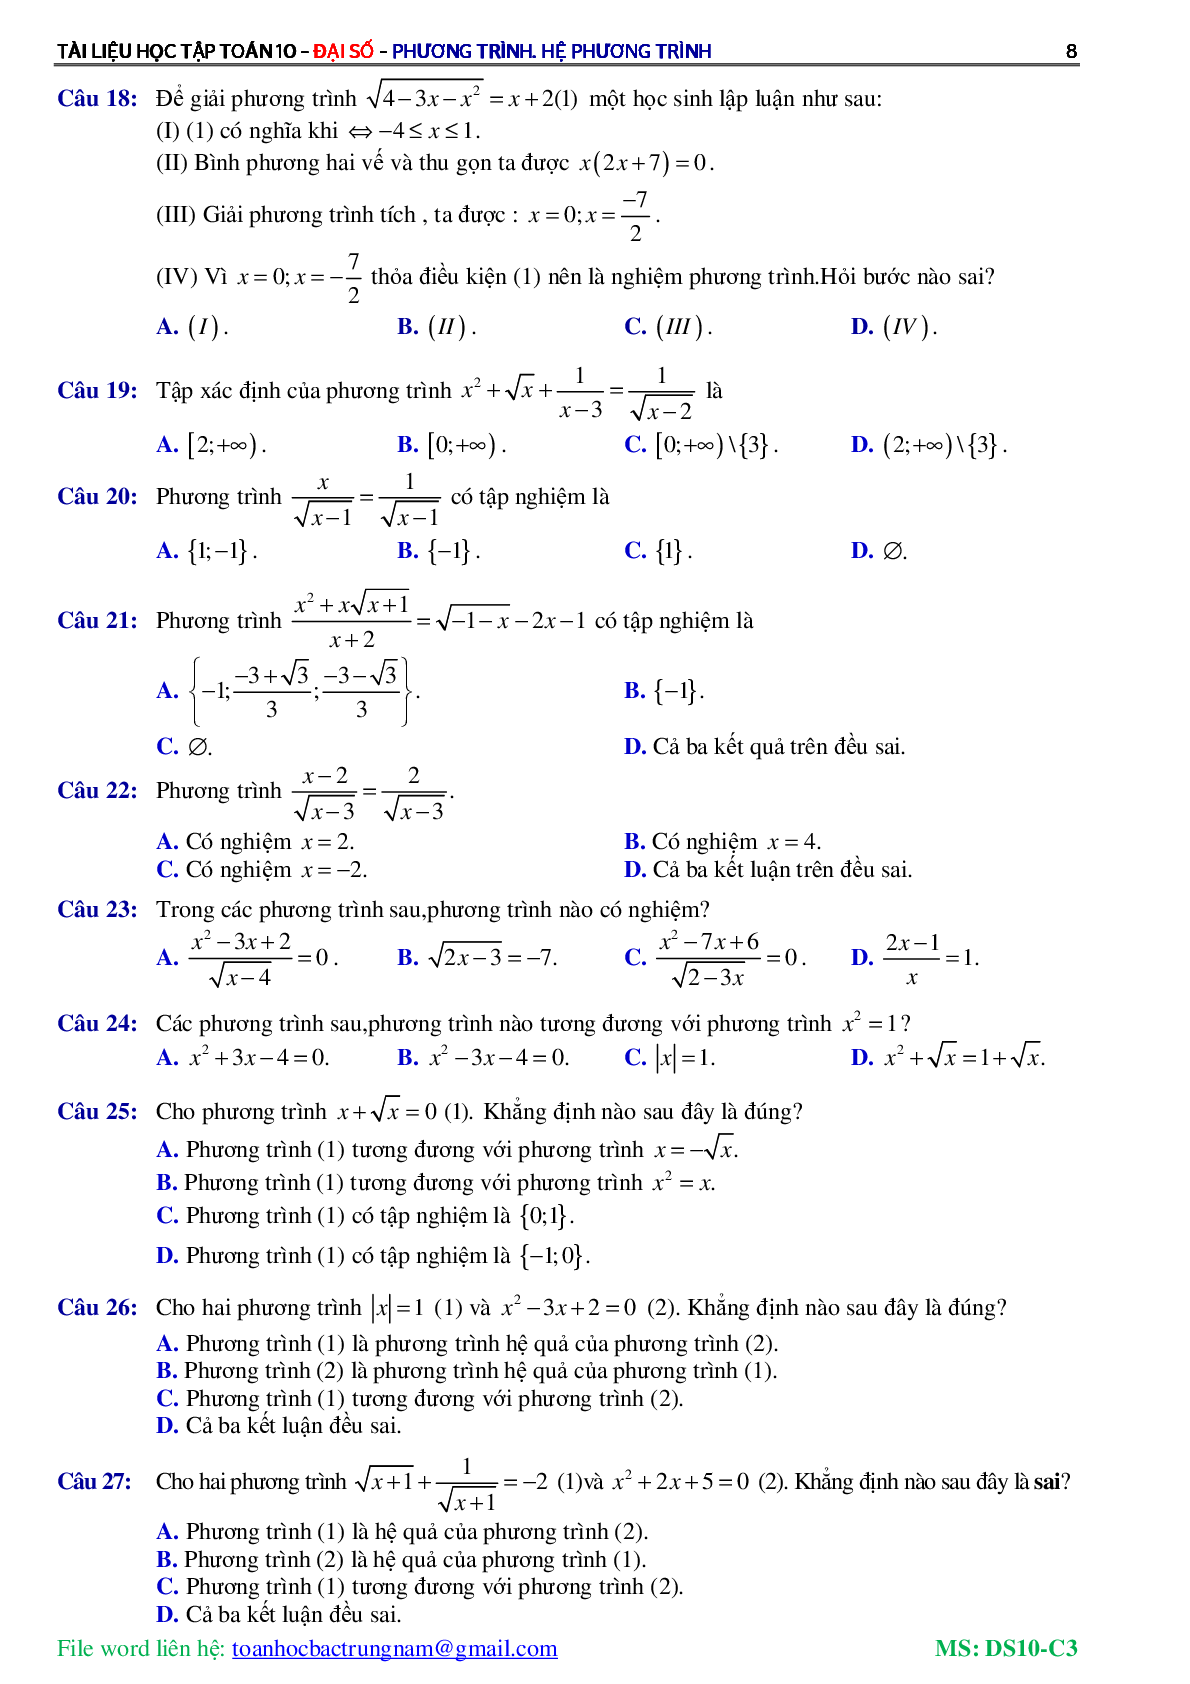 Lý thuyết, bài tập về Phương trình và hệ phương trình có đáp án (trang 9)